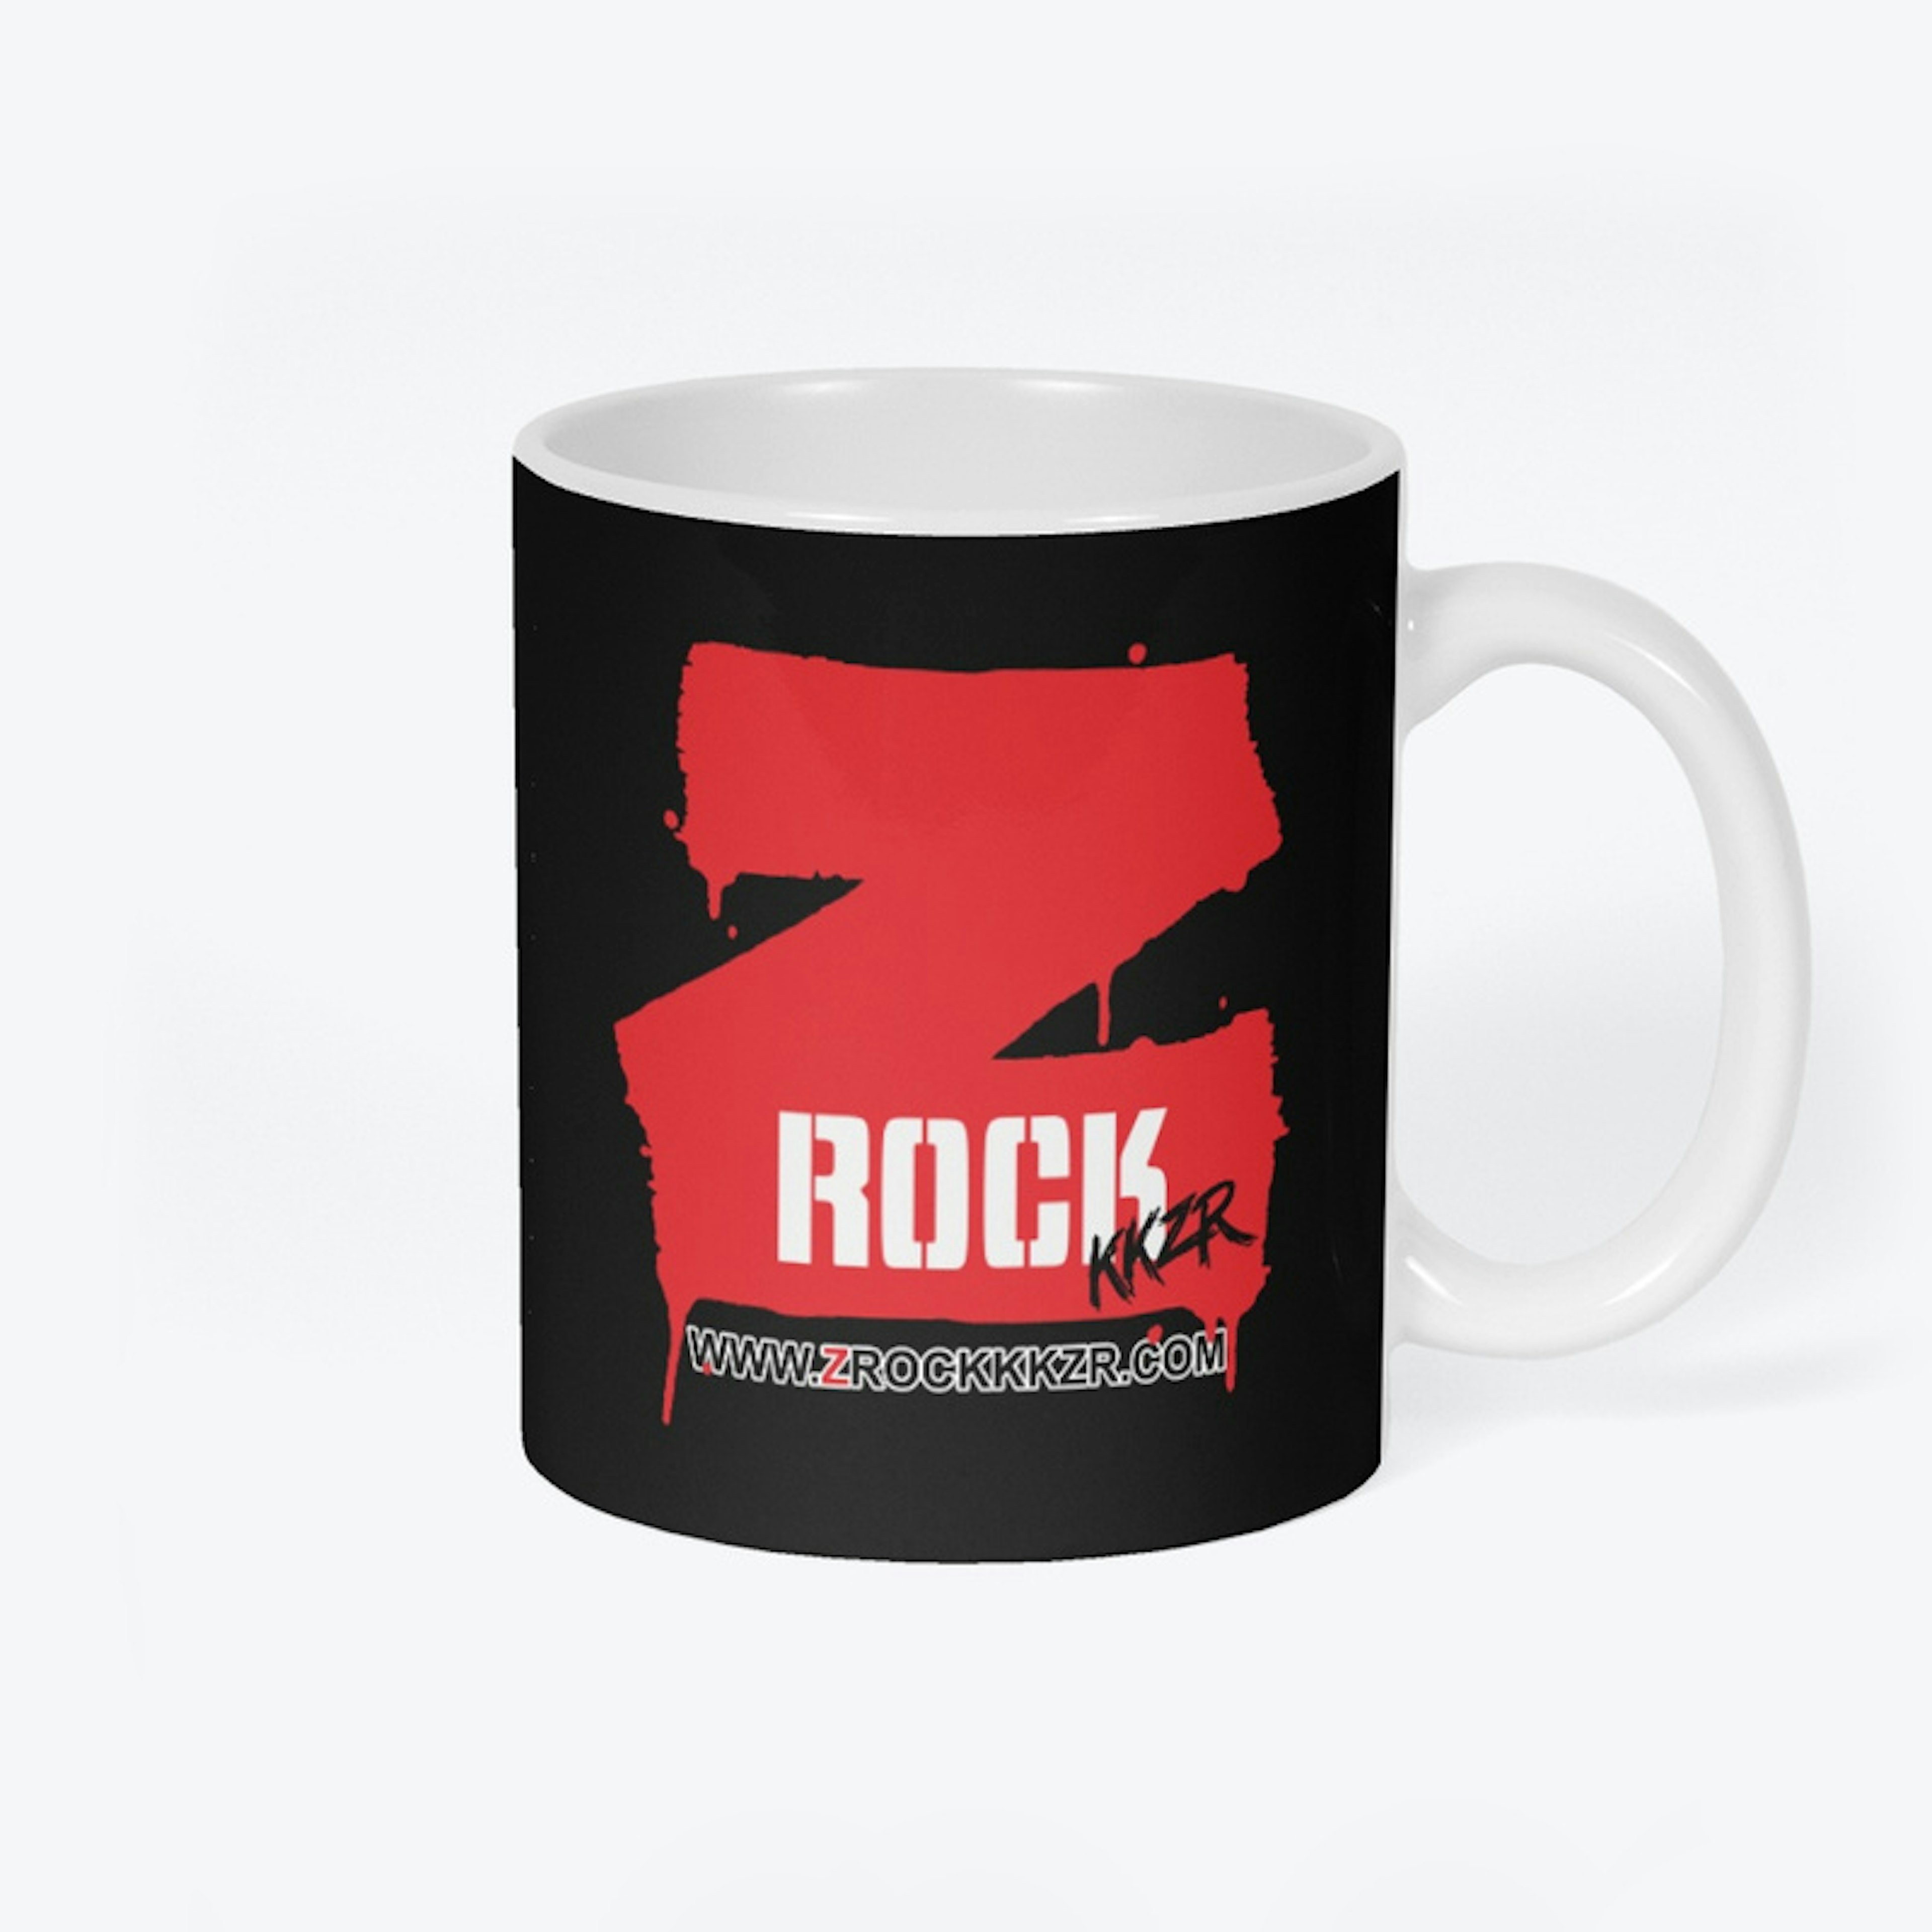 Z Rock KKZR Red Z (Classic)